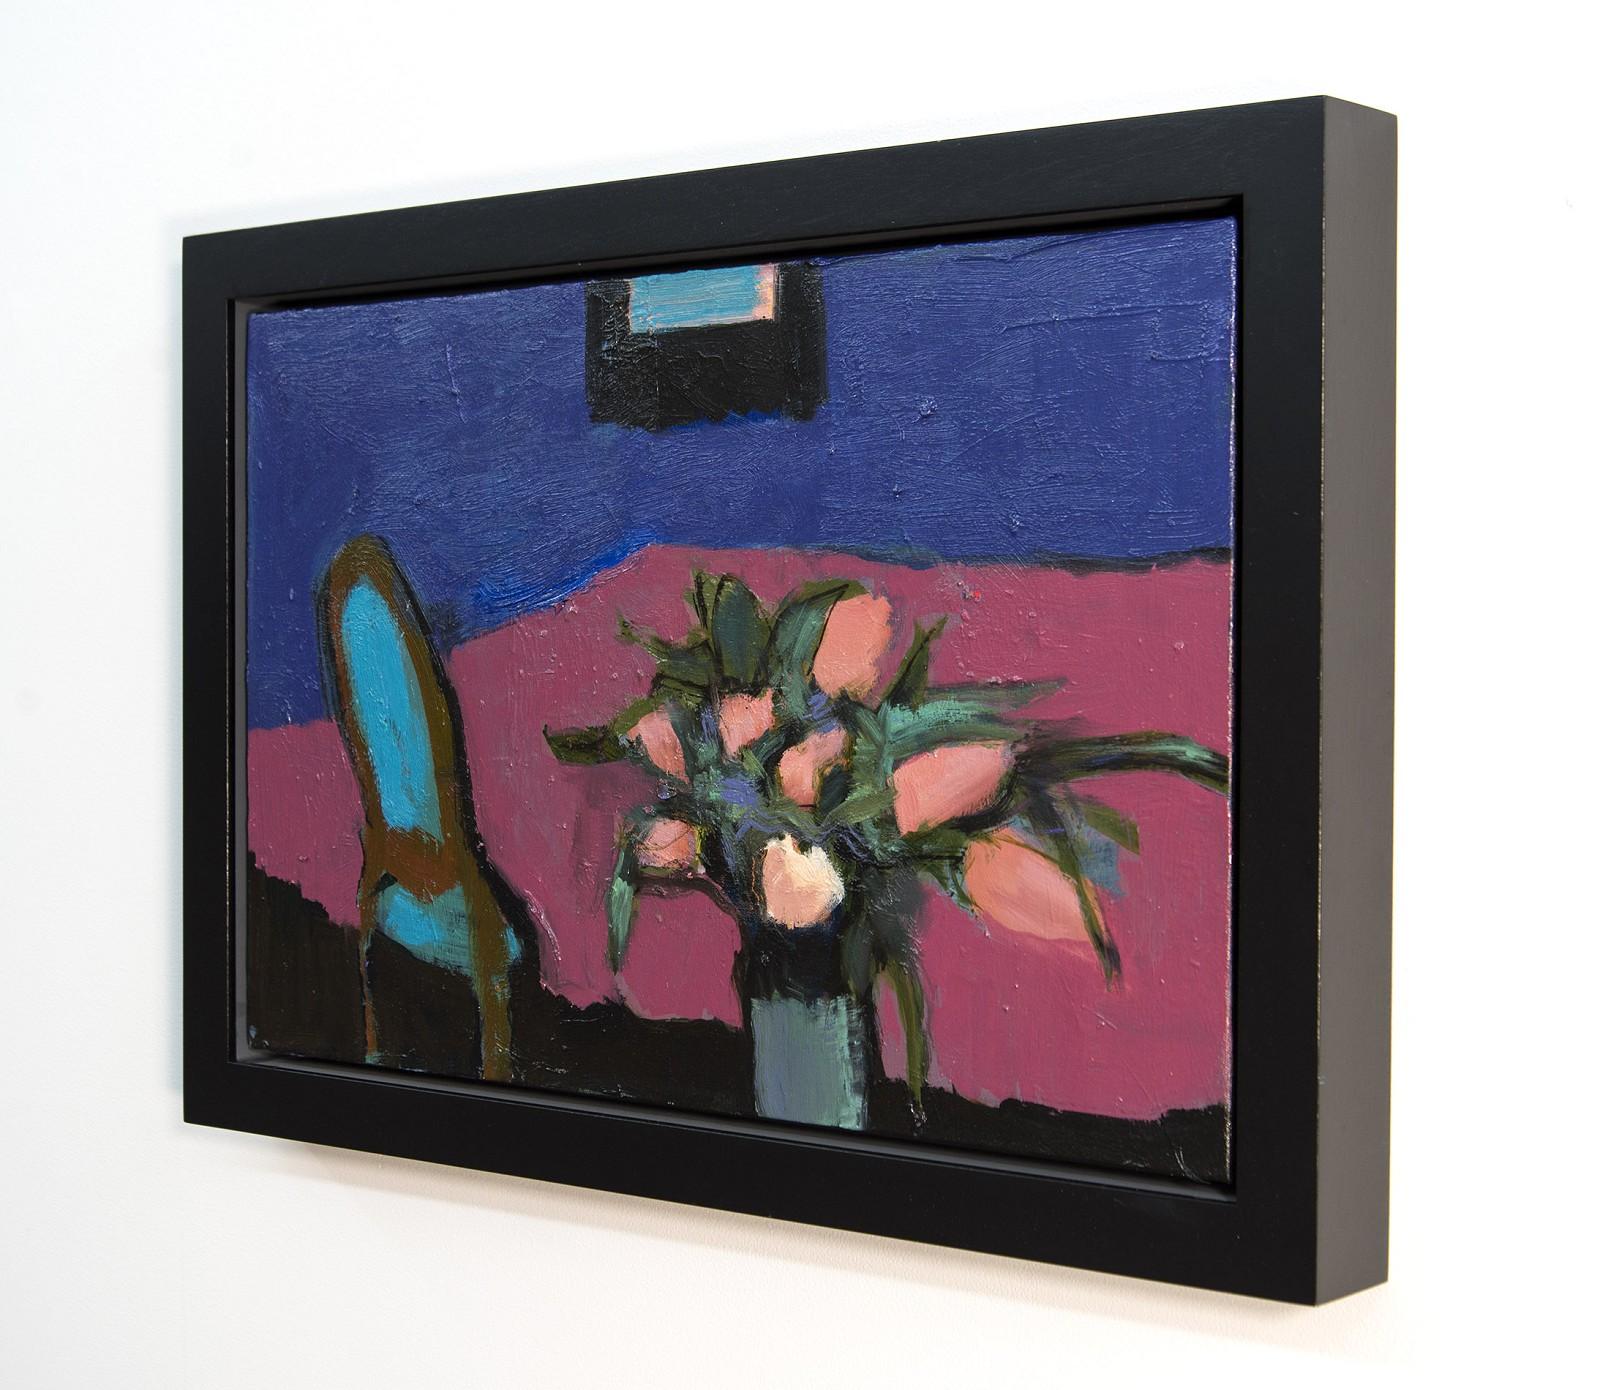 Un vase de tulipes roses posé sur une nappe rose foncé et une chaise turquoise vive sur un mur bleu nuit, tel est le sujet de cette délicieuse peinture à l'huile de l'artiste britannique Jennifer Hornyak. Connue pour ses œuvres abstraites et